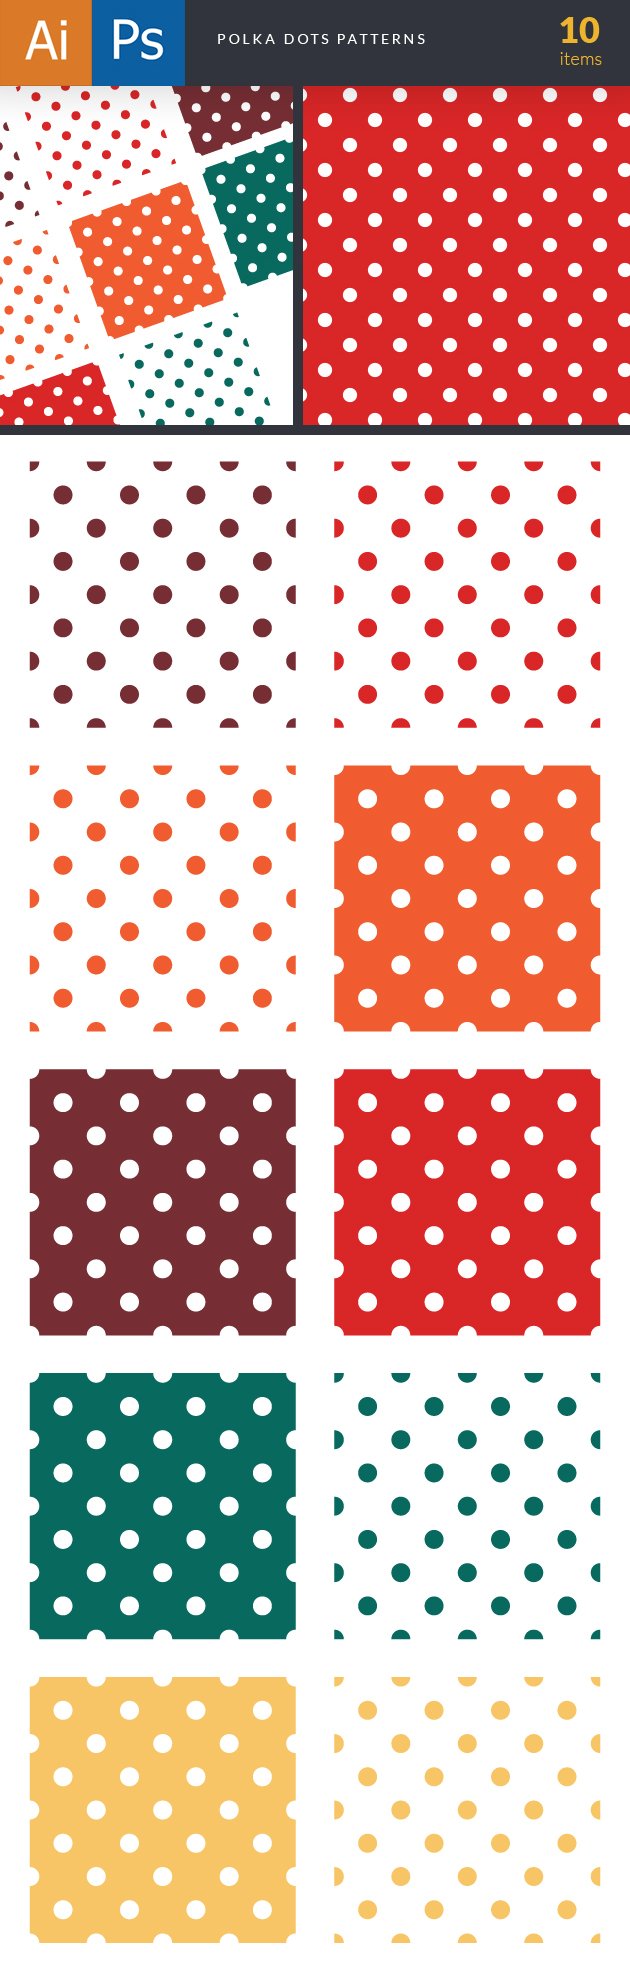 designtnt-patterns-polka-dots-large